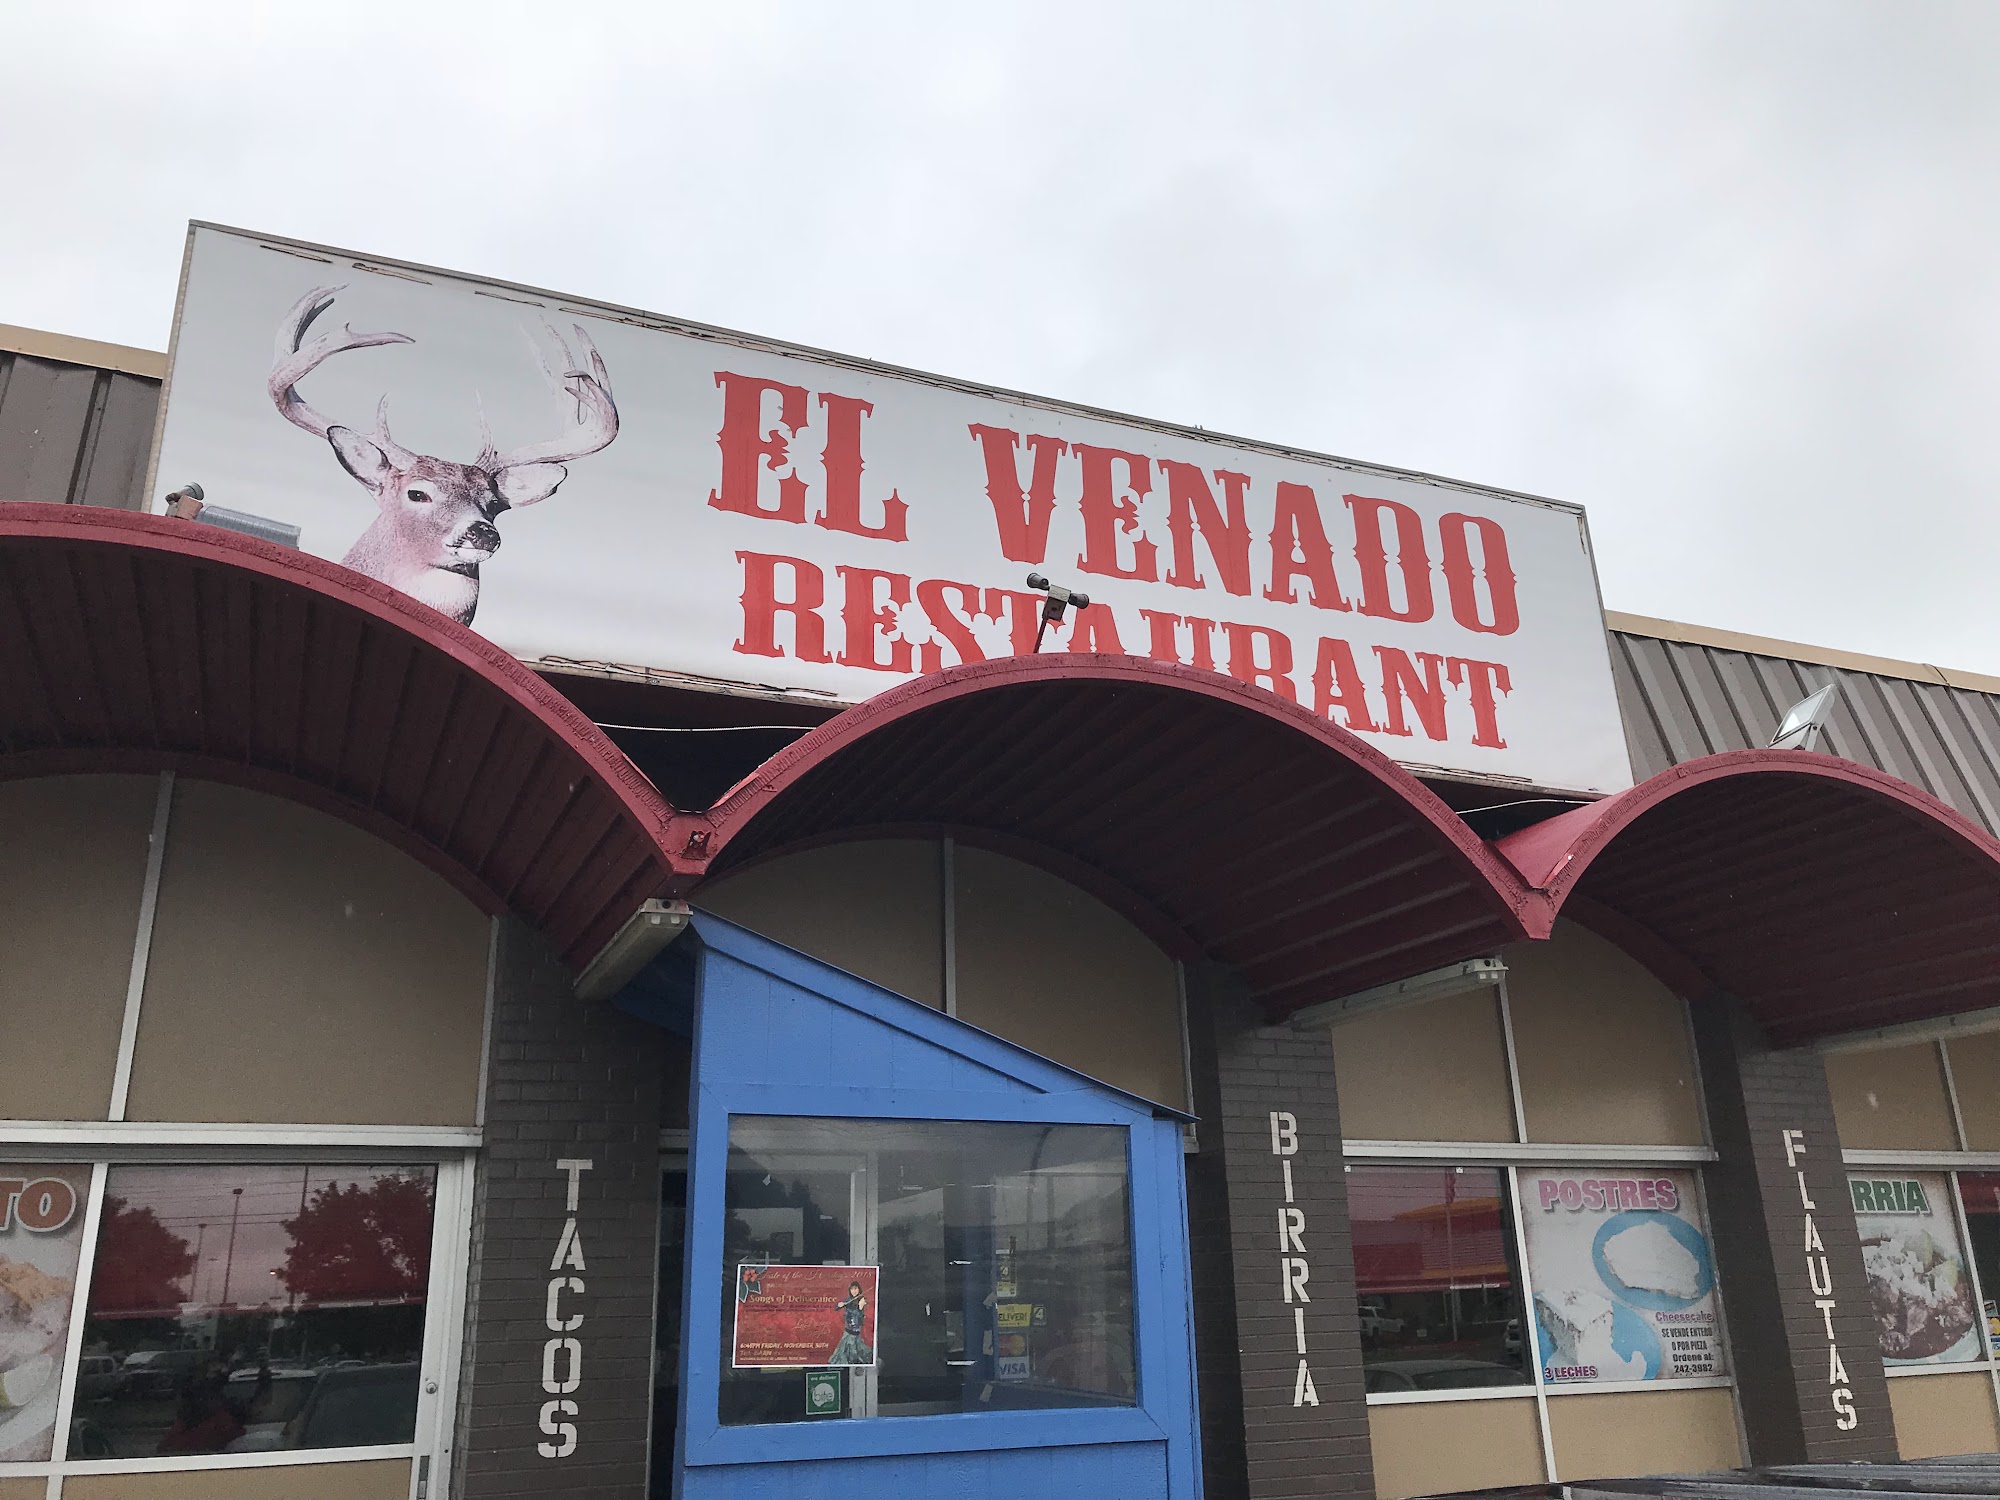 El Venado Restaurant